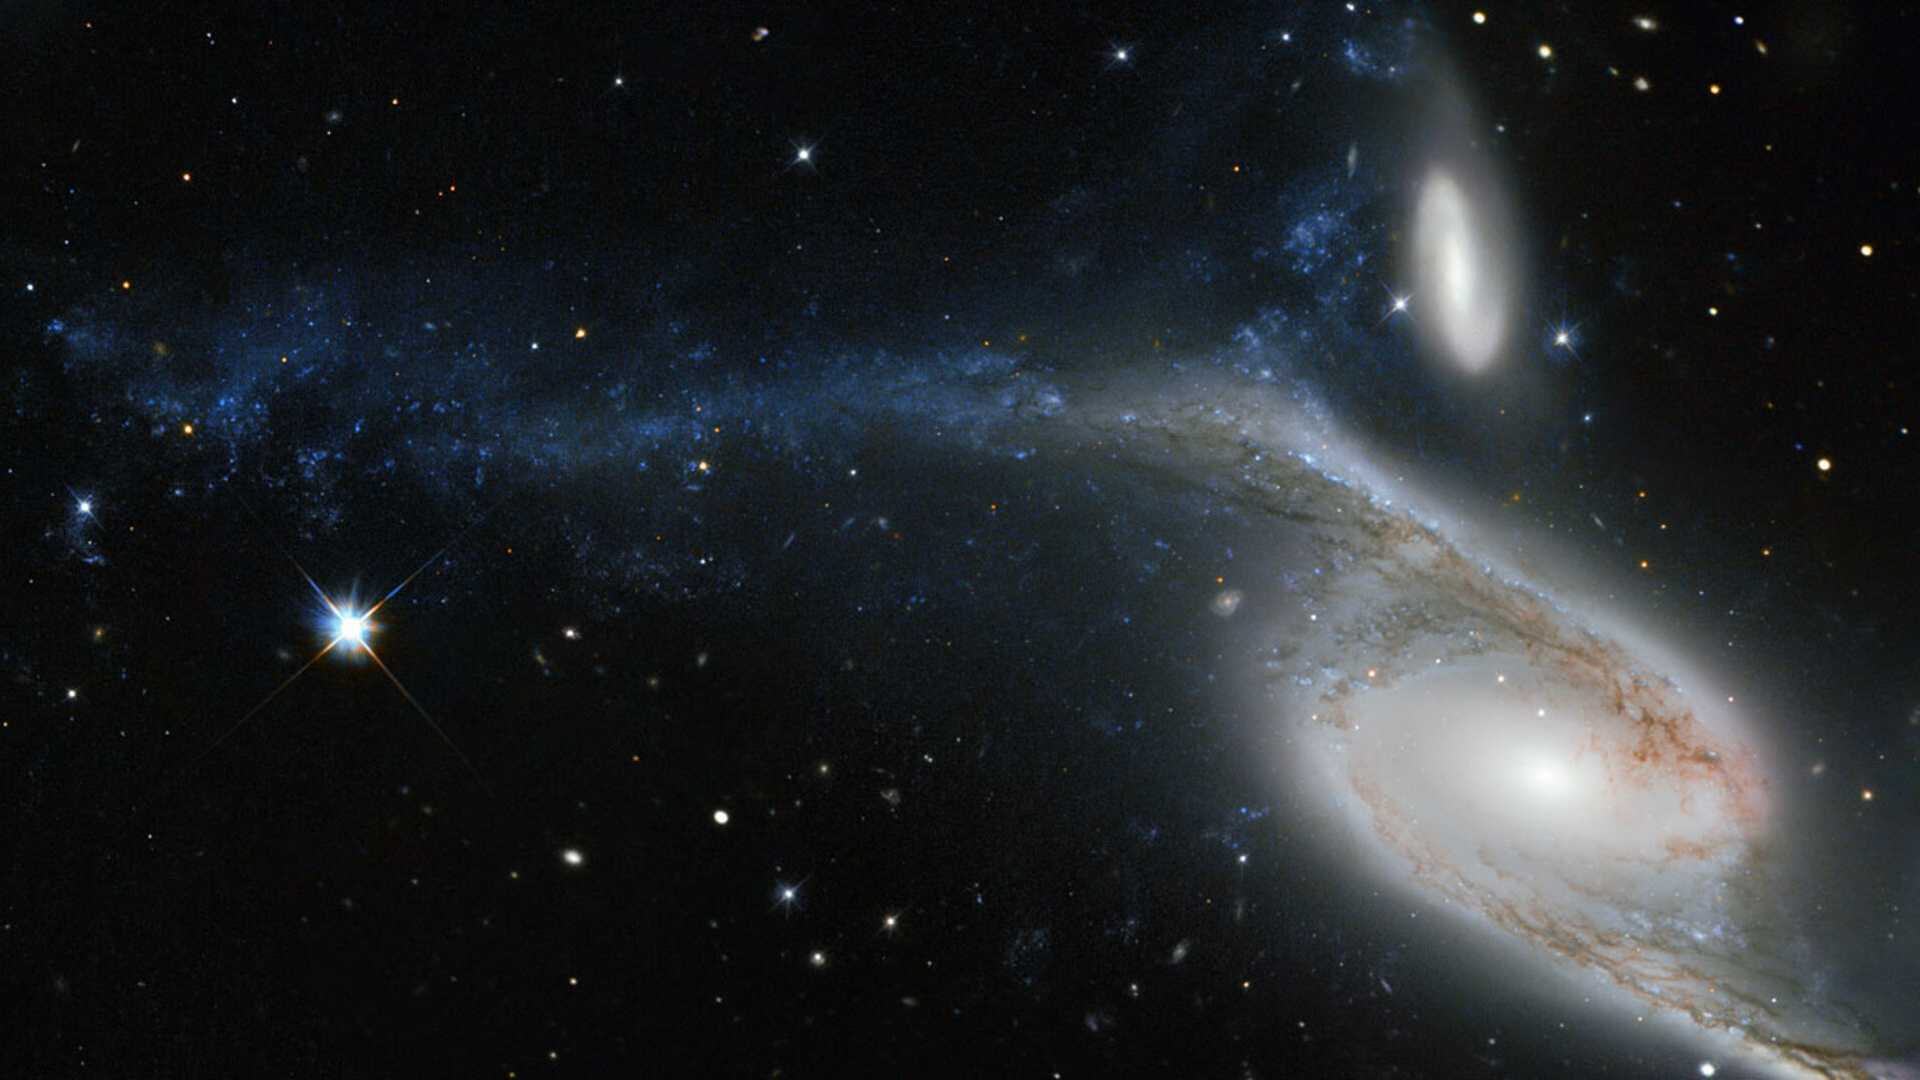 Esta imagem, feita pelo Telescópio Espacial Hubble da NASA/ESA, mostra a galáxia NGC 6872, na Constelação de Pavo. De ponta a ponta, NGC 6872 mede mais de 500 mil anos-luz de diâmetro, tornando-se a segunda maior galáxia espiral descoberta até hoje. O braço superior esquerdo está visivelmente distorcido e é povoado por regiões de formação de estrelas, que aparecem na cor azul. A forma incomum de NGC 6872 se dá pela interação com a galáxia menor IC 4970, vista logo acima. Ambas estão a cerca de 300 milhões de anos-luz da Terra